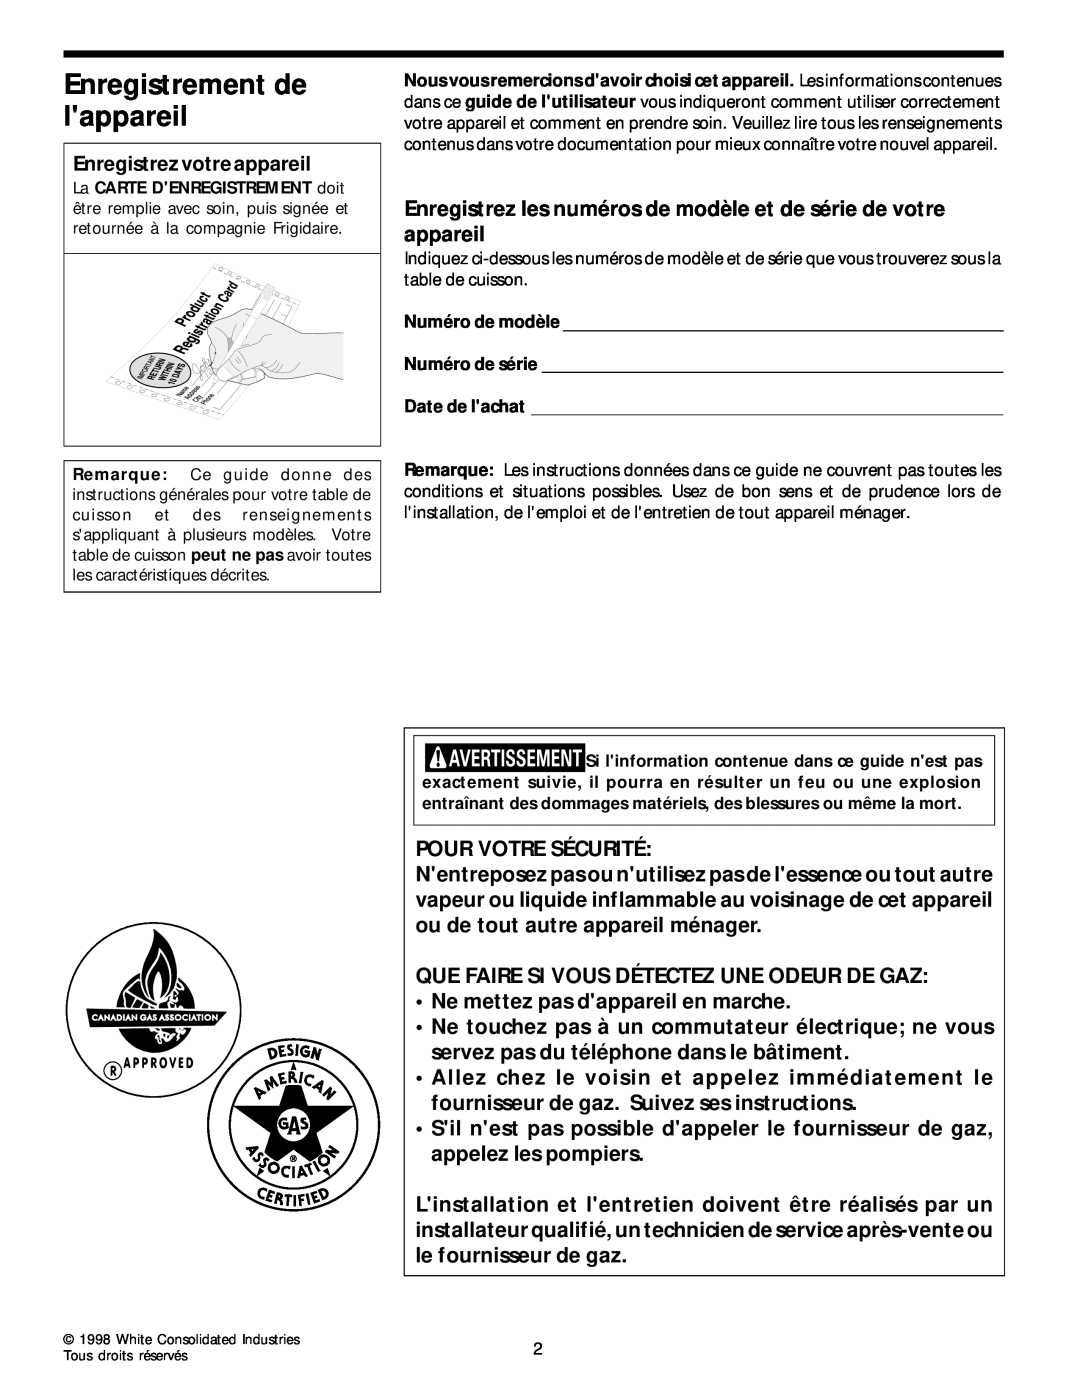 Frigidaire 318068129 important safety instructions Enregistrement de lappareil 